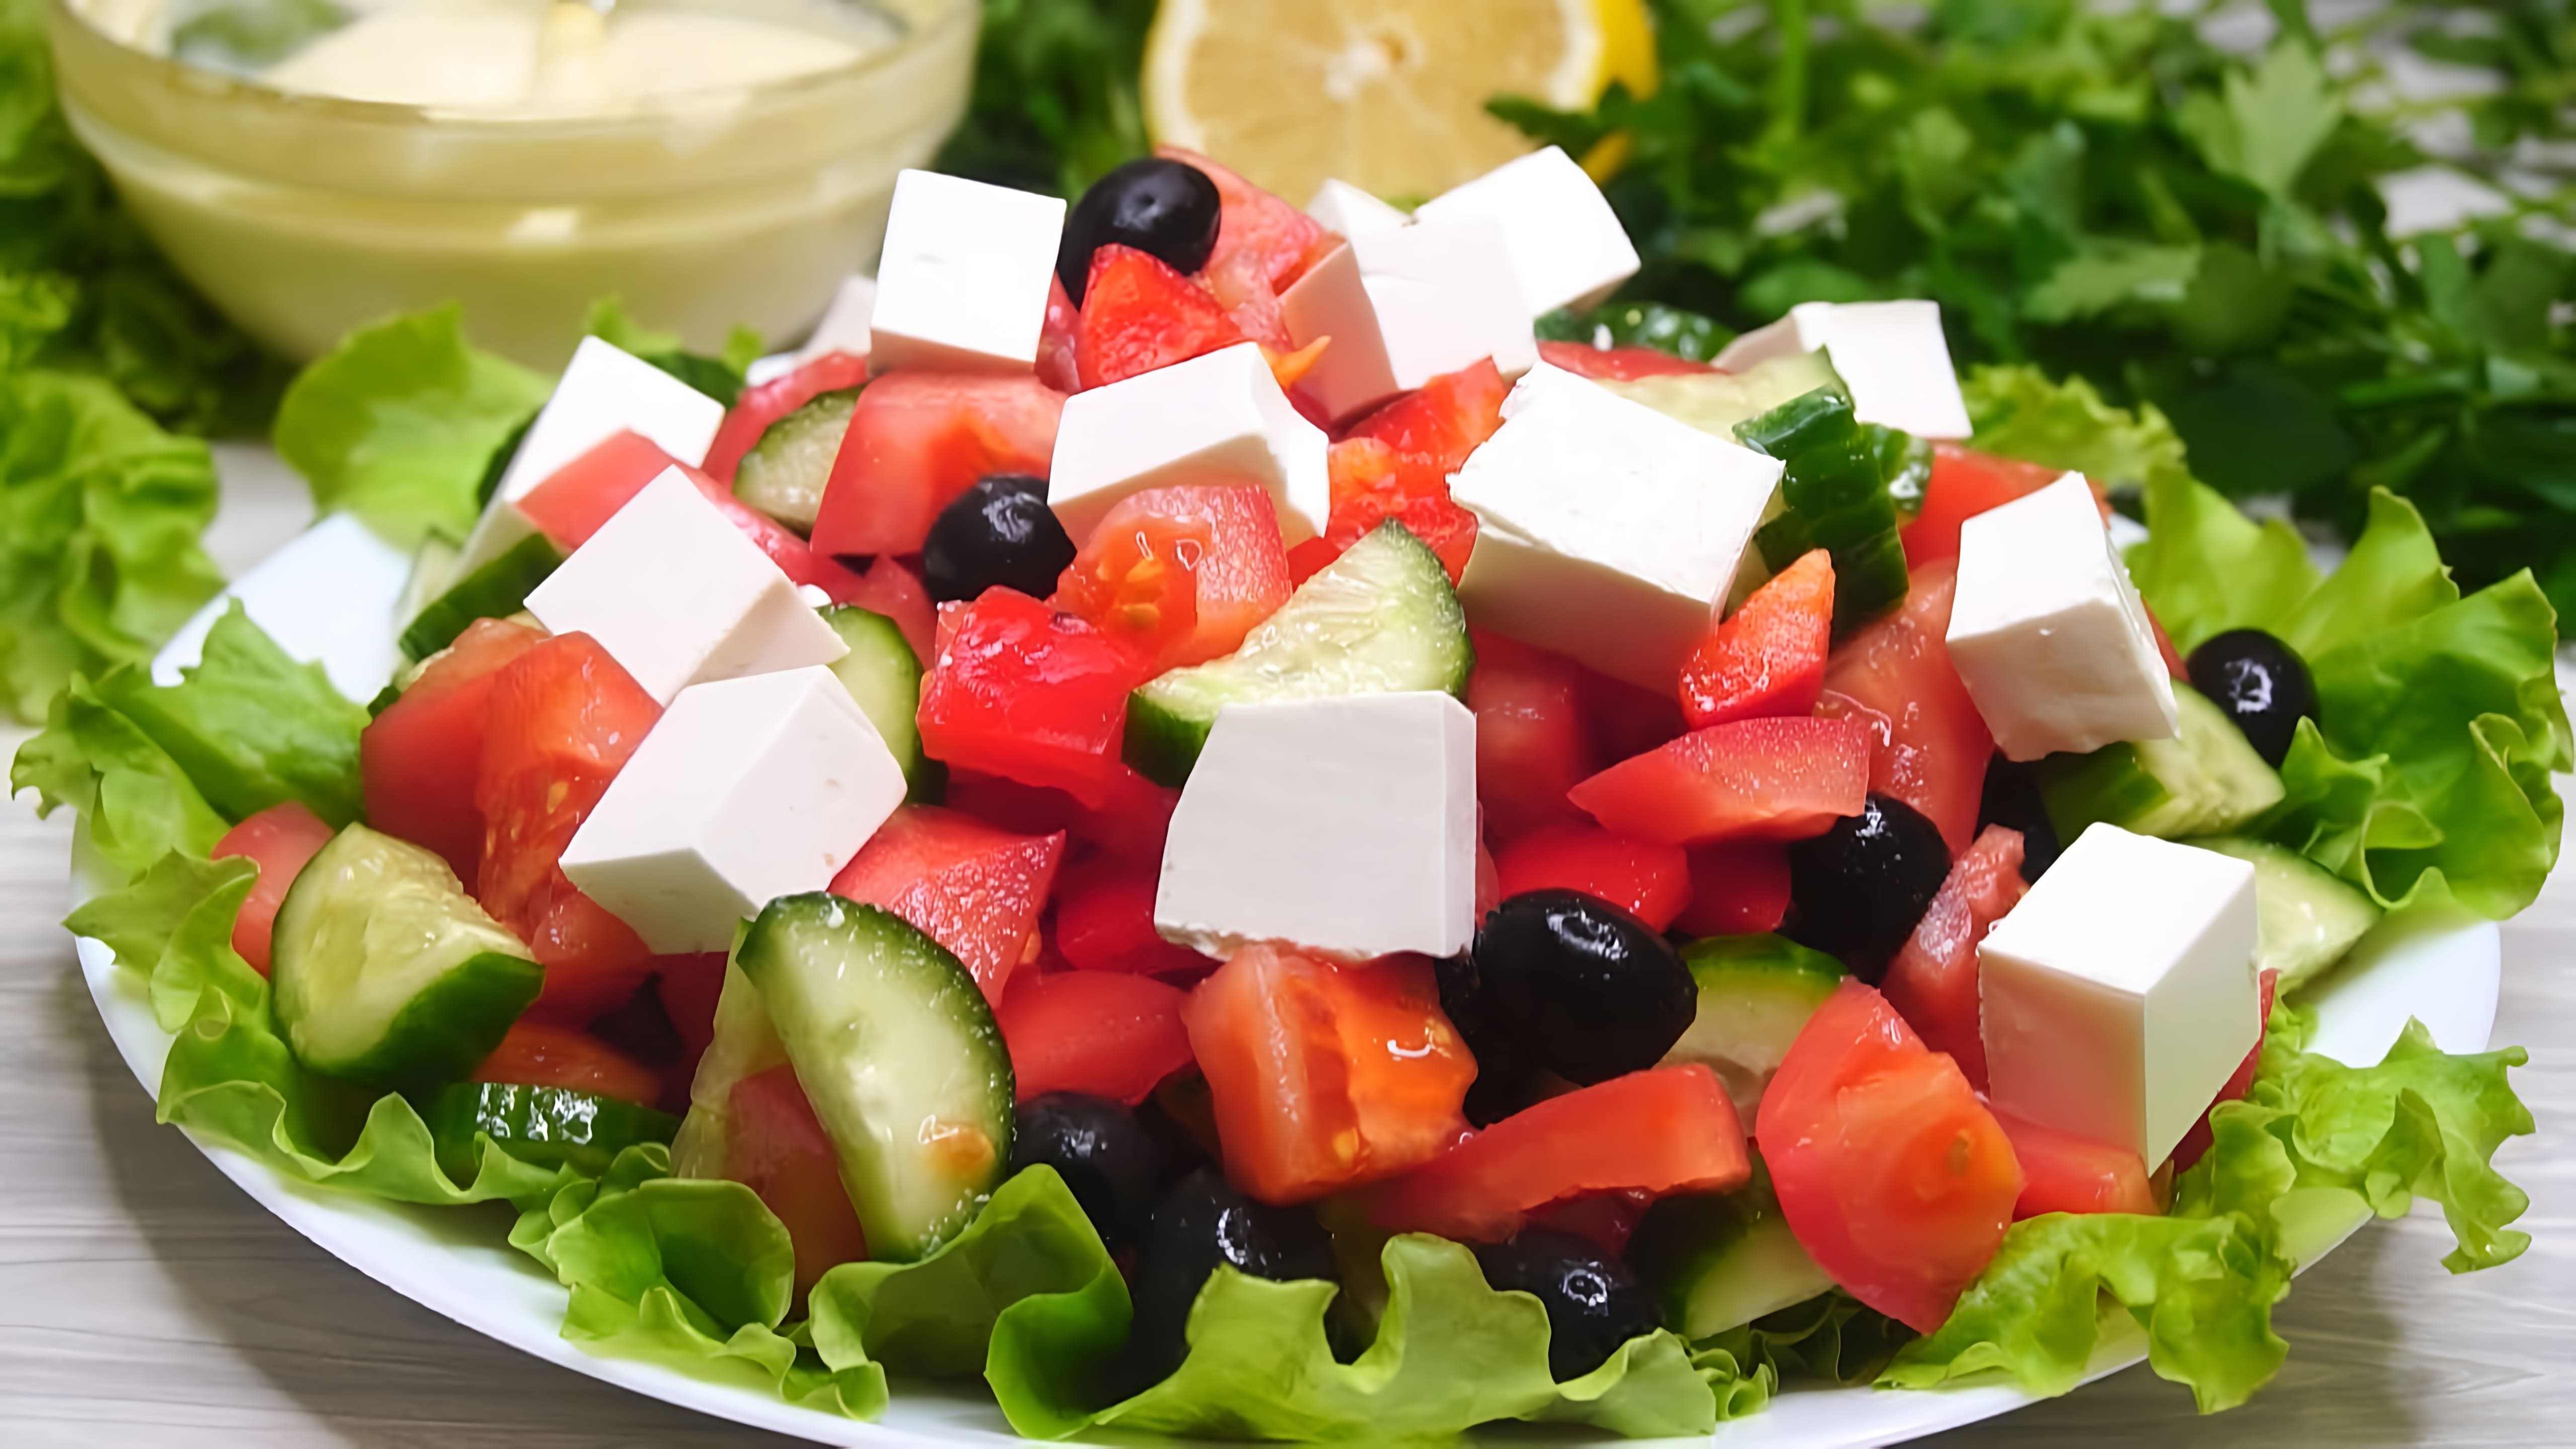 В этом видео демонстрируется процесс приготовления греческого салата с особой заправкой